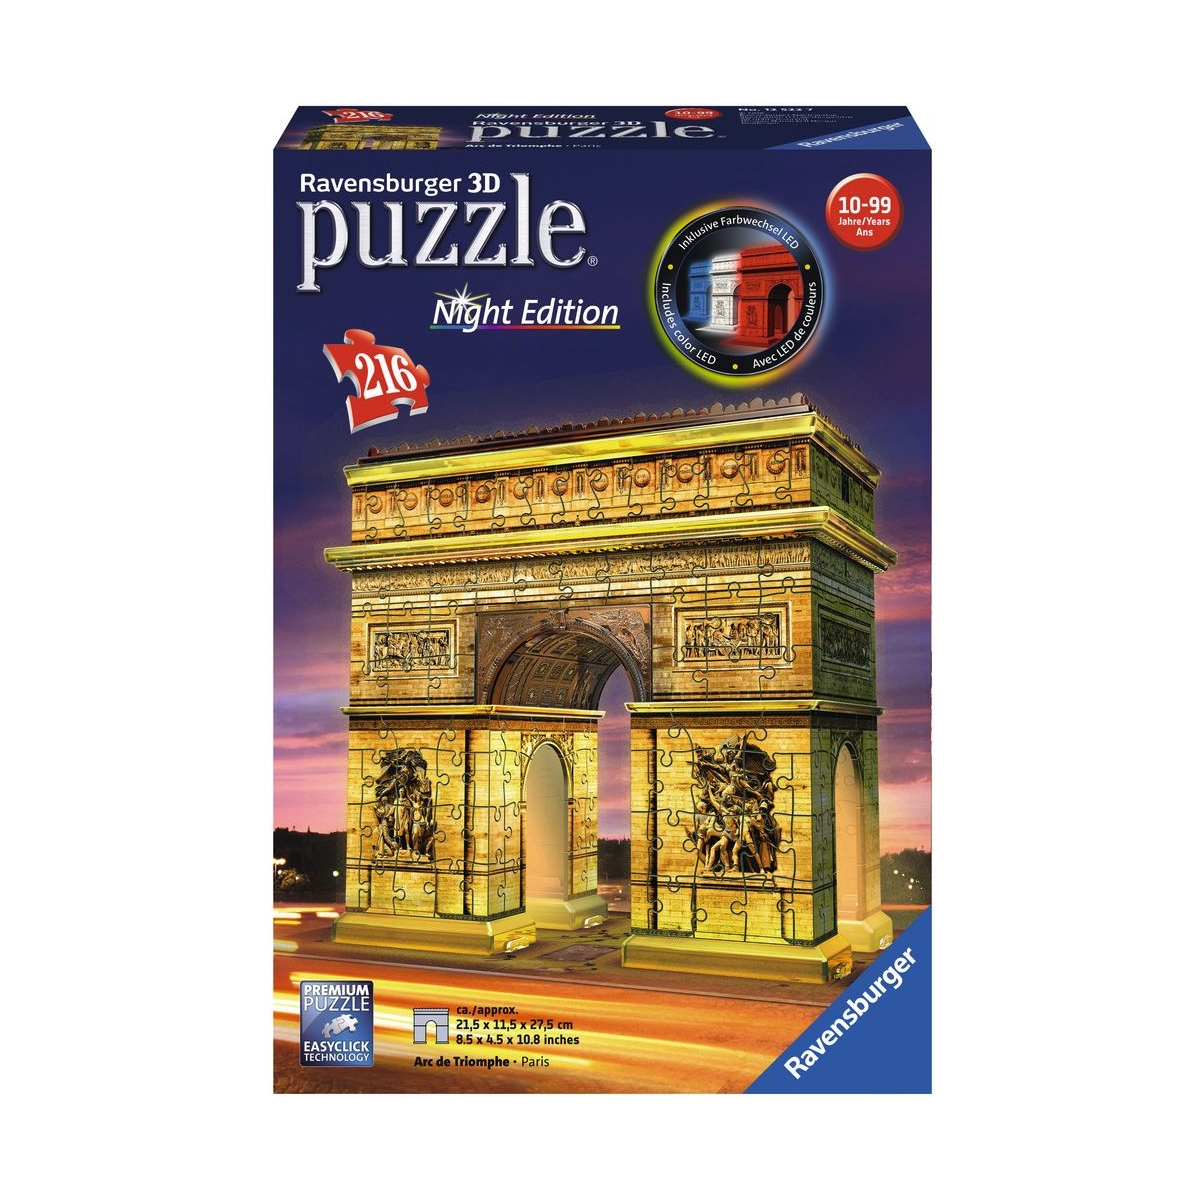 MUKK® Spielwaren Münster - Ravensburger Puzzle - 3D Puzzles - Triumphbogen  Night Edition, 216 Teile